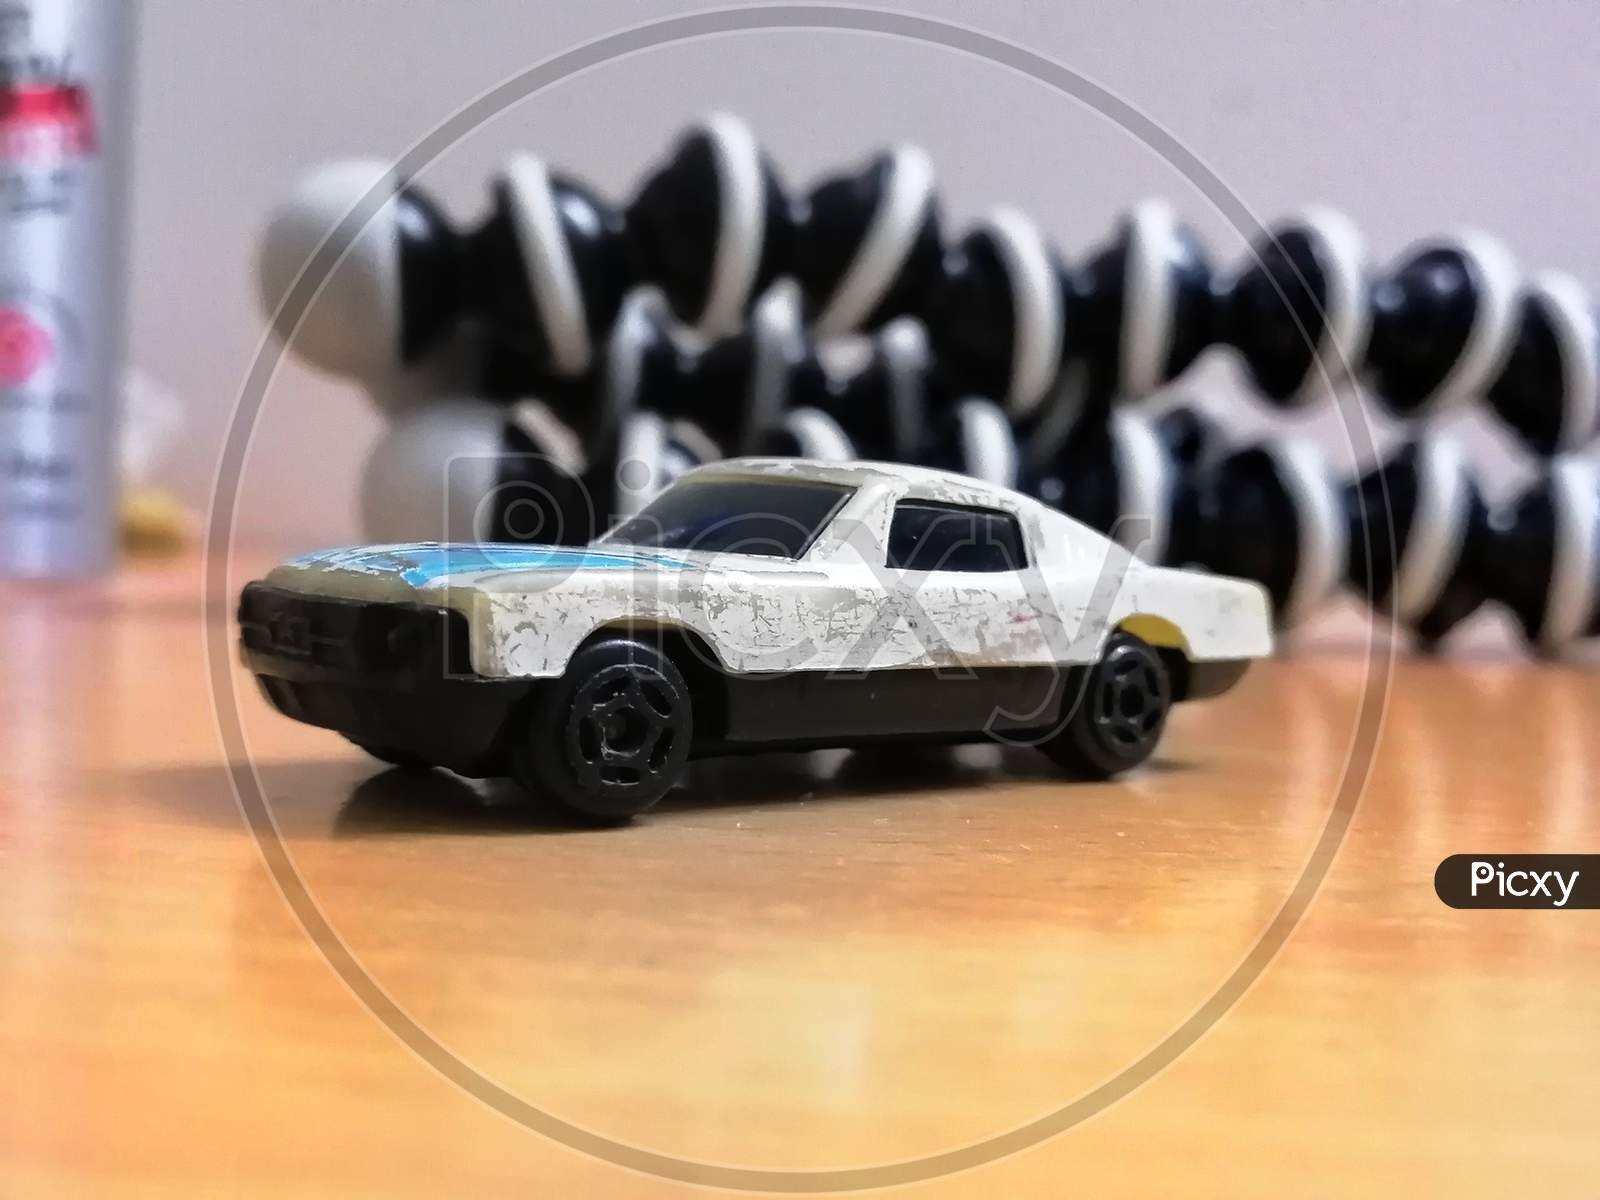 Toy Vintage Car model